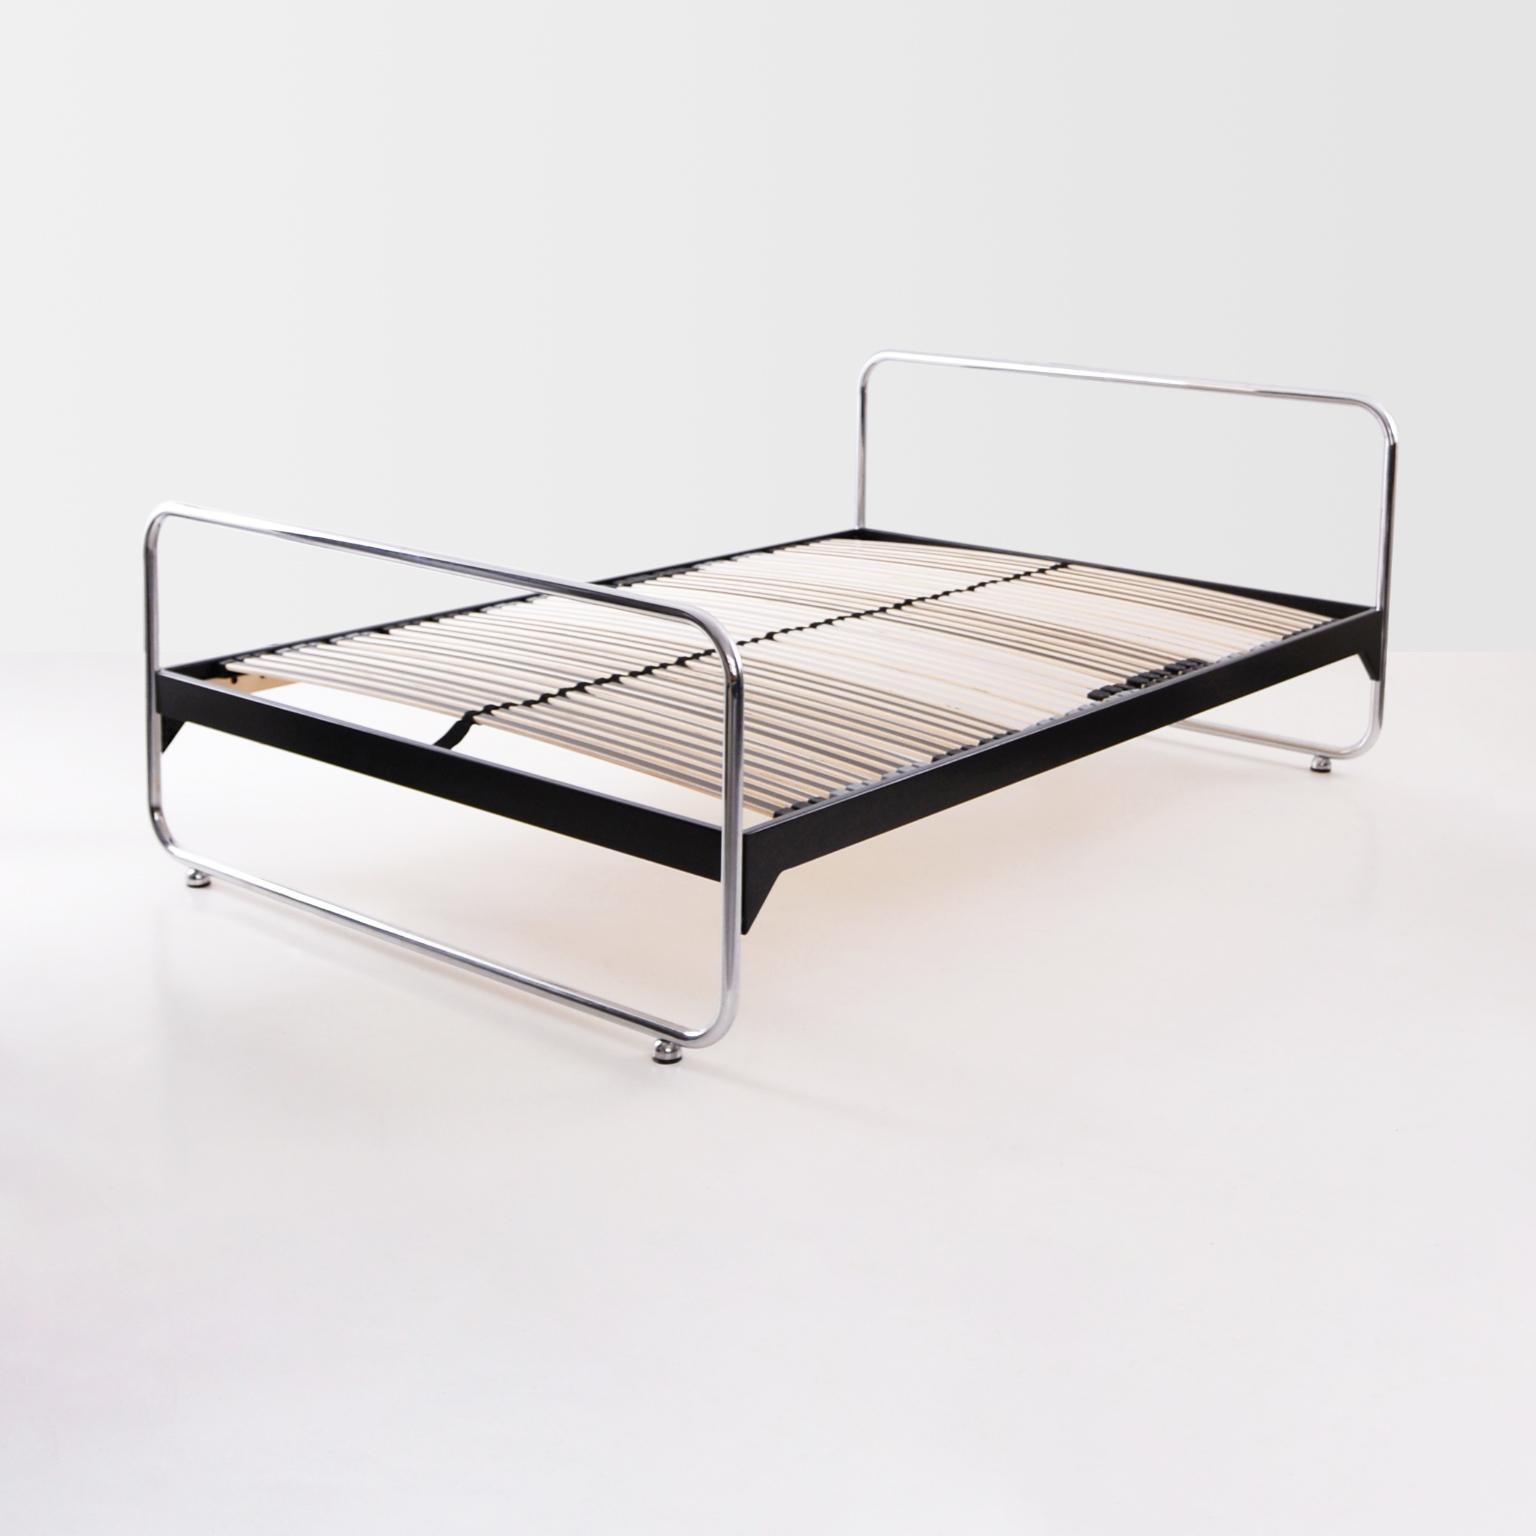 tubular steel bed frame